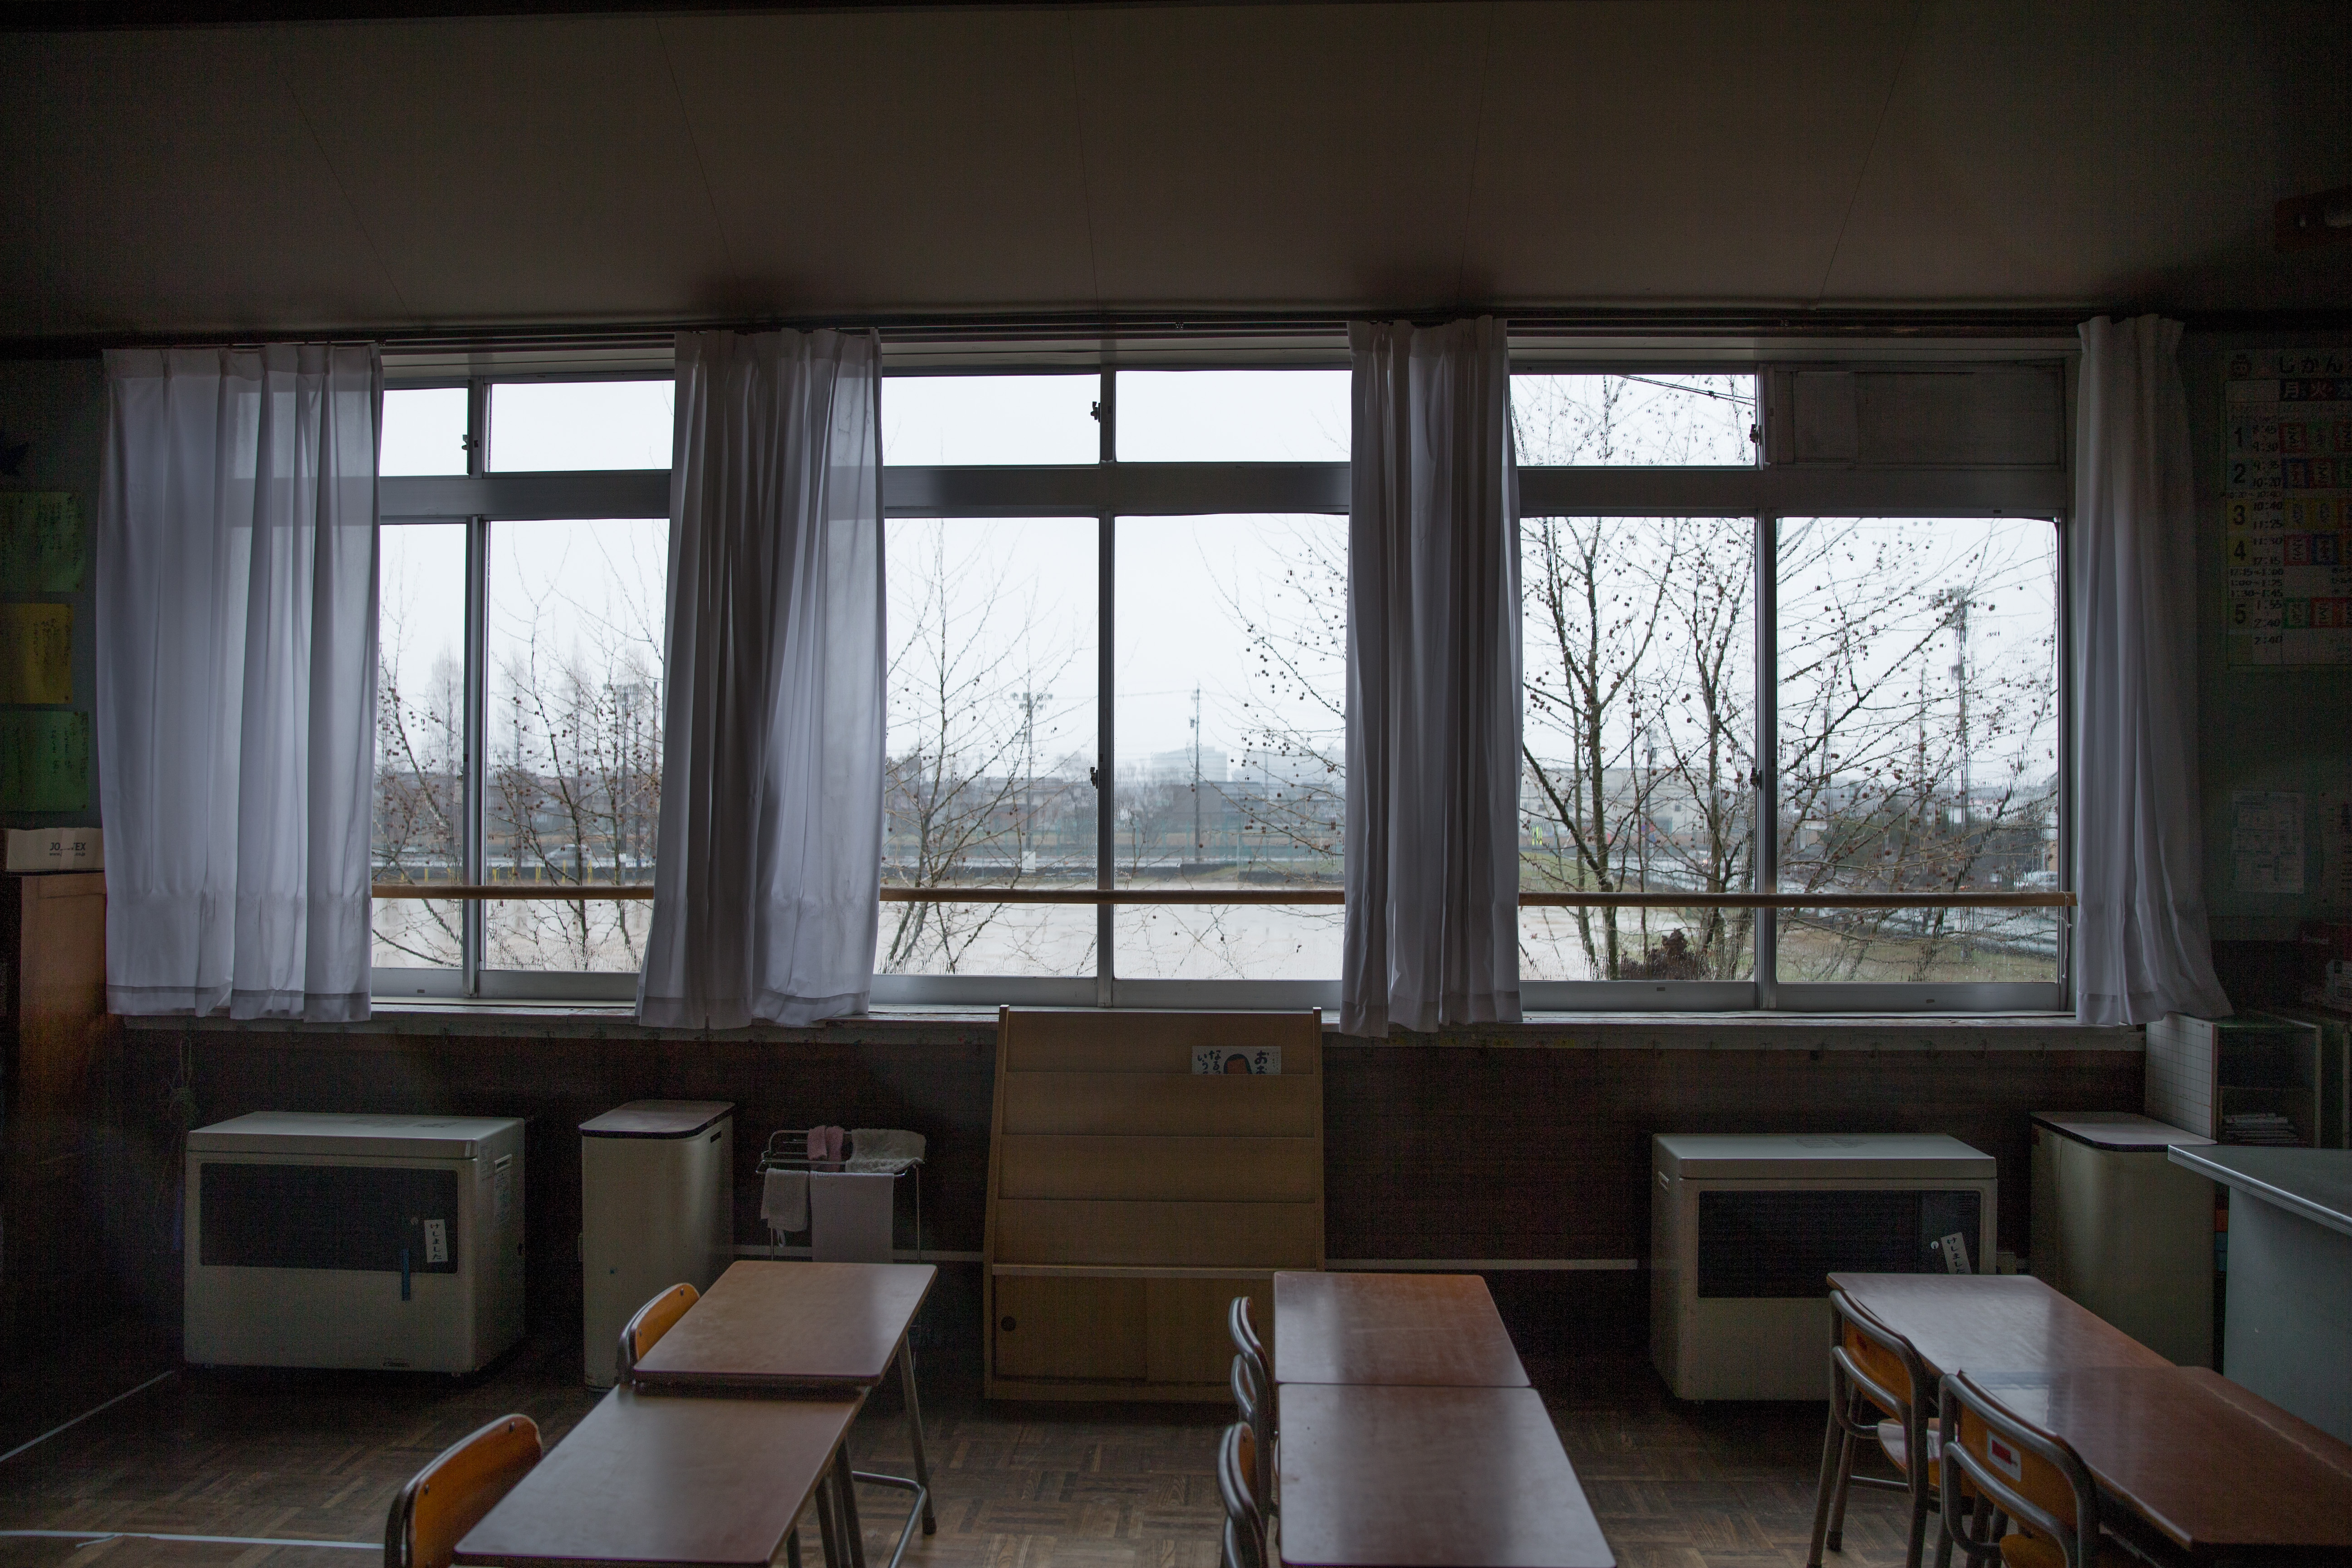 200以上 学校 教室 窓 576013学校 教室 窓